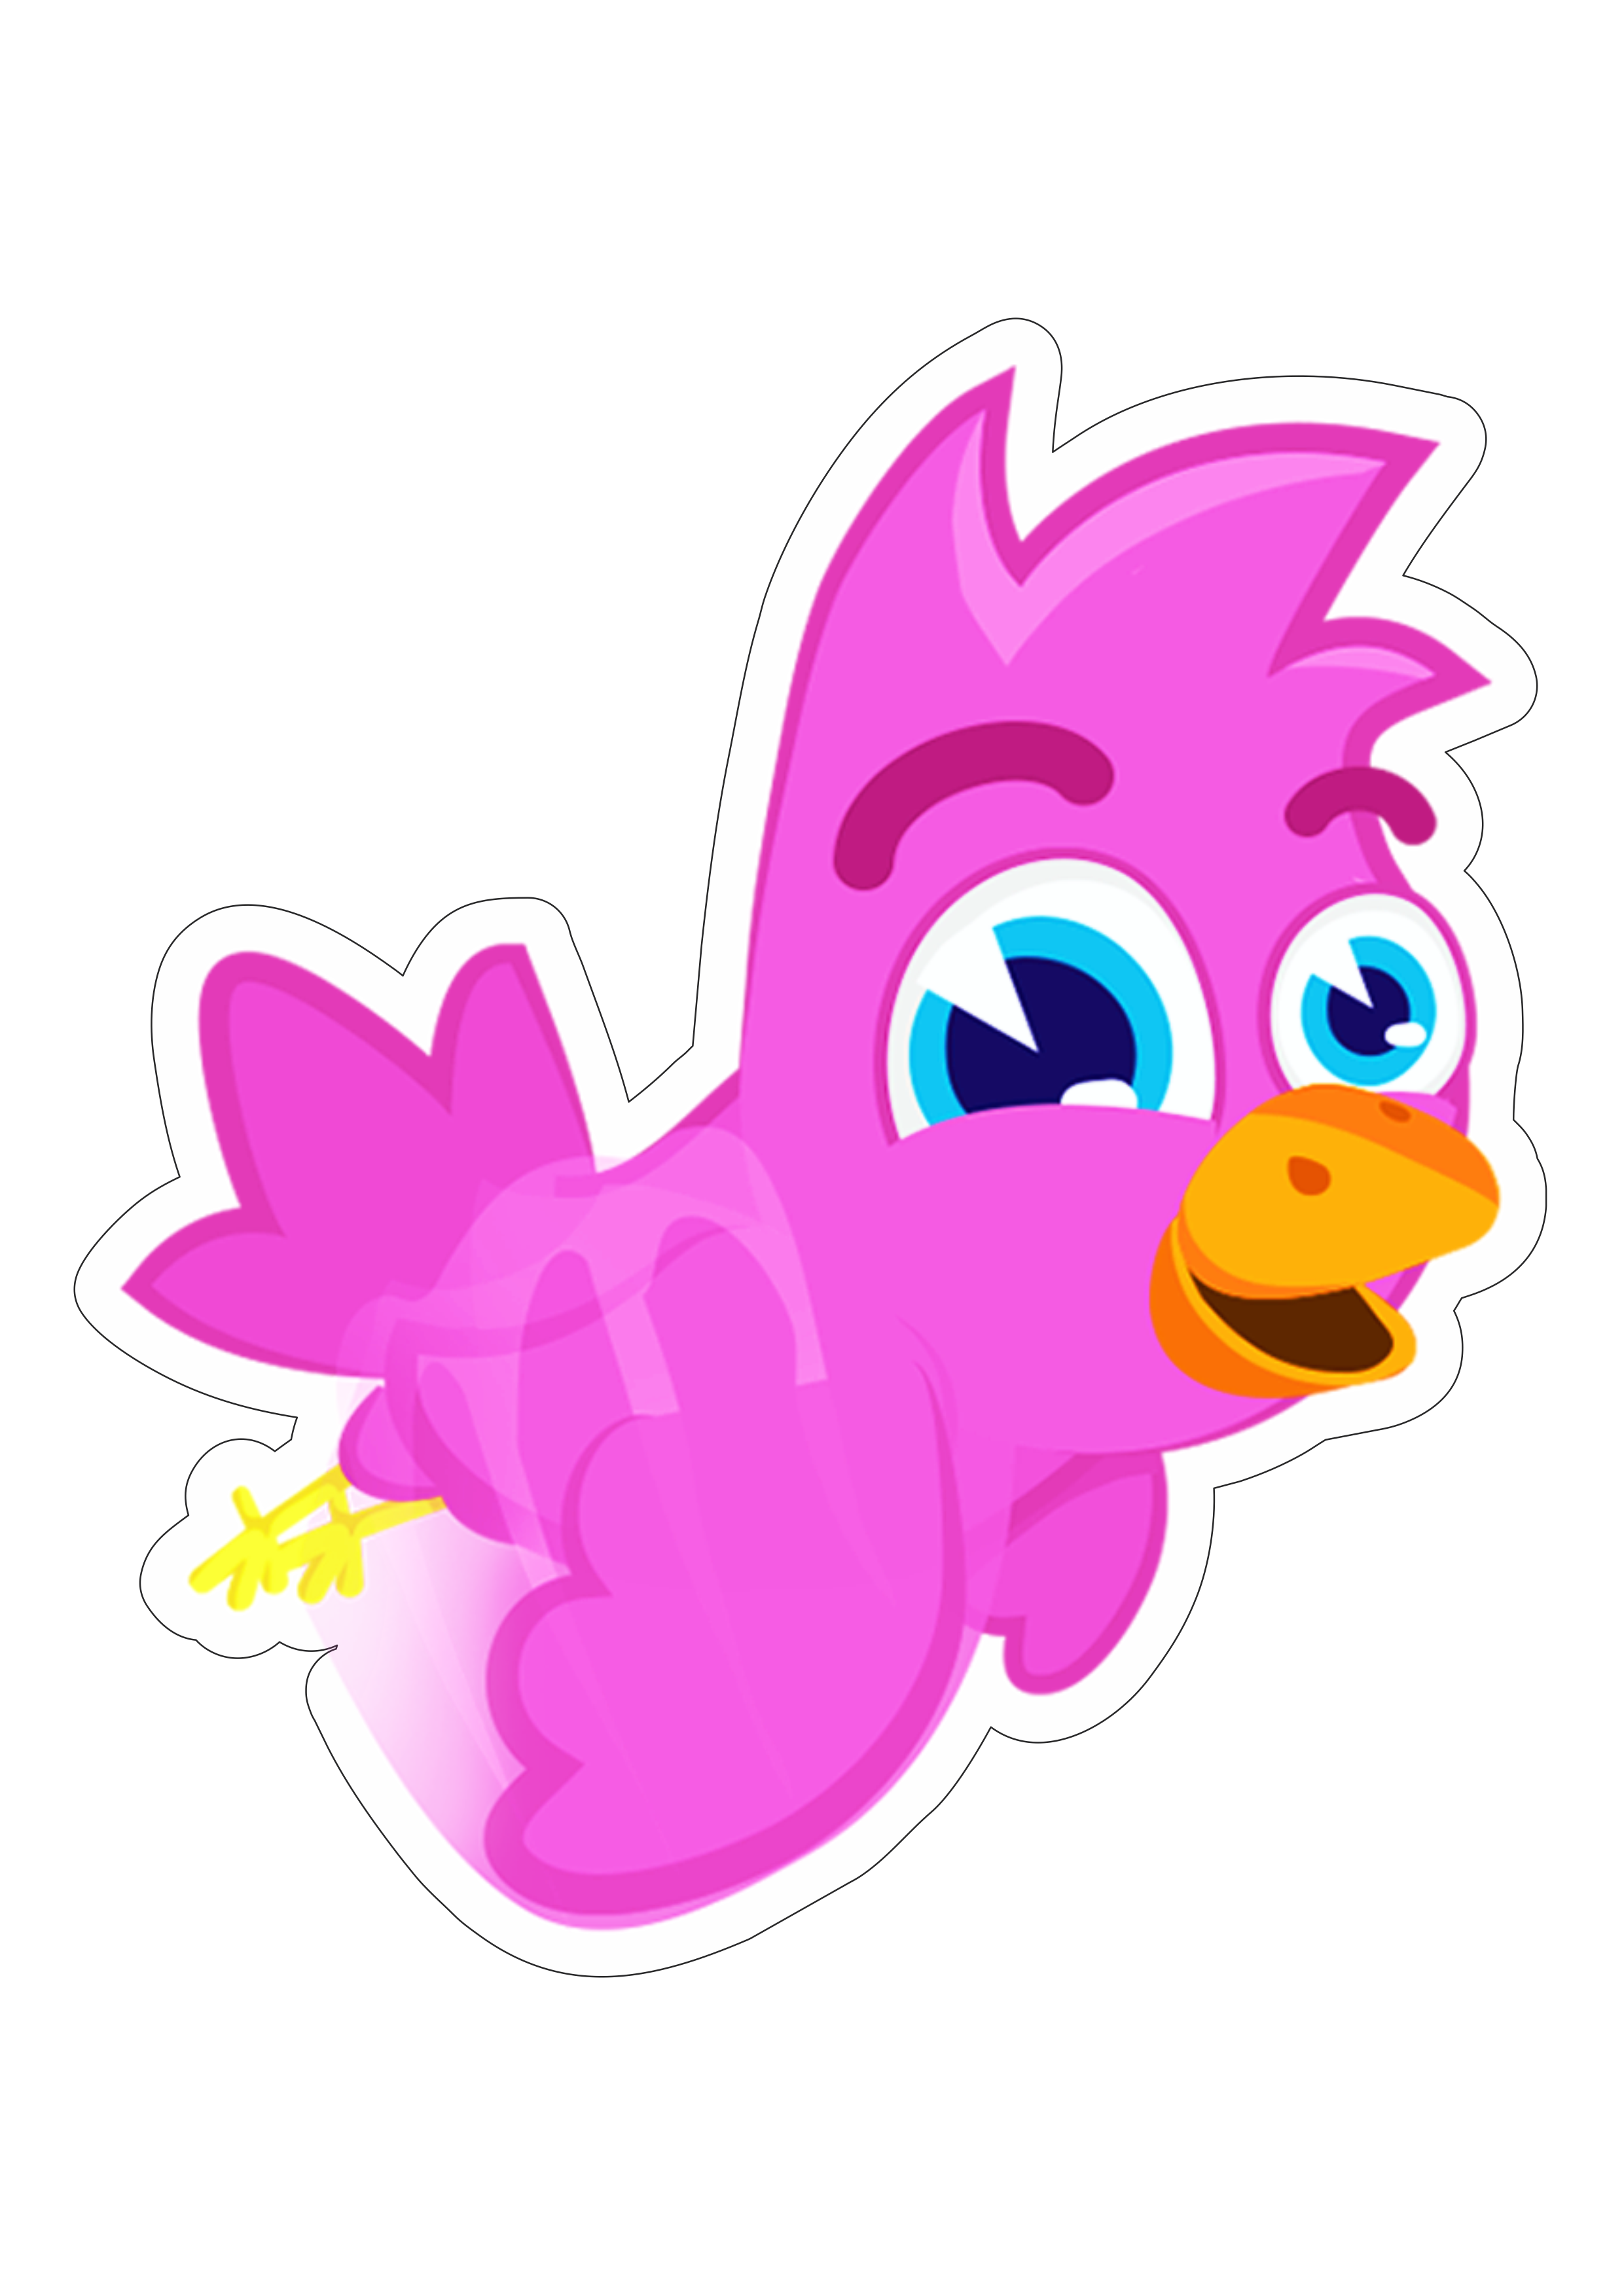 Mundo bita passarinho roxo desenho infantil musical youtube fundo transparente com contorno png